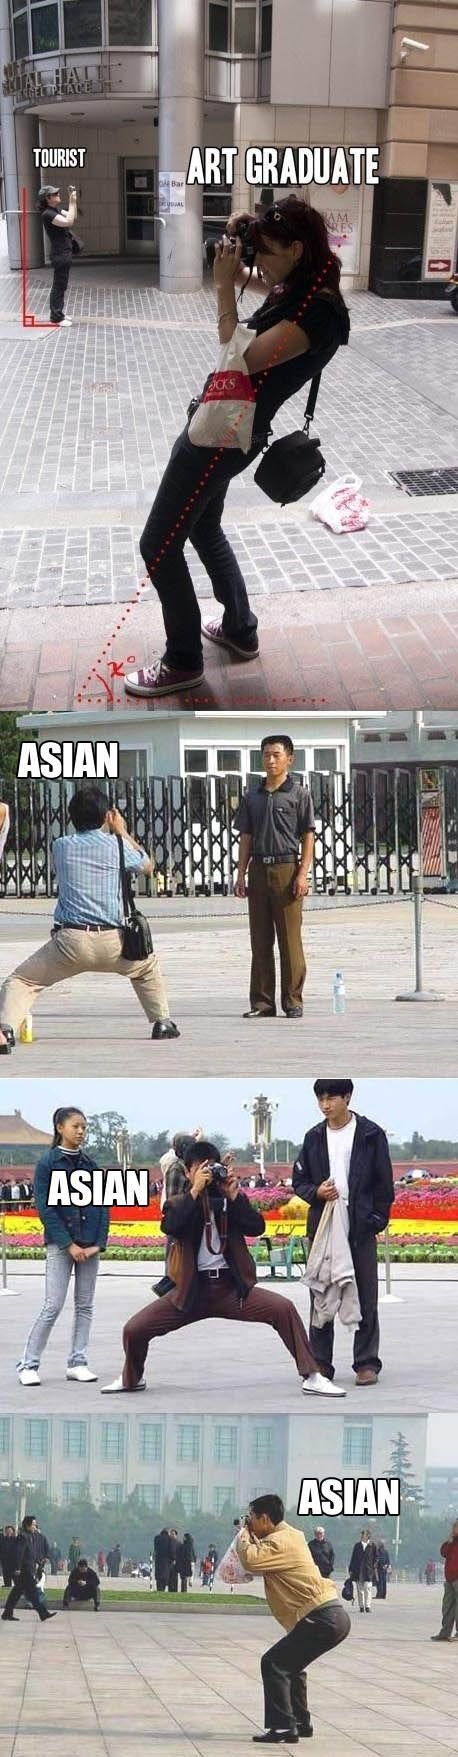 Tourist vs. art graduate vs. Asian.